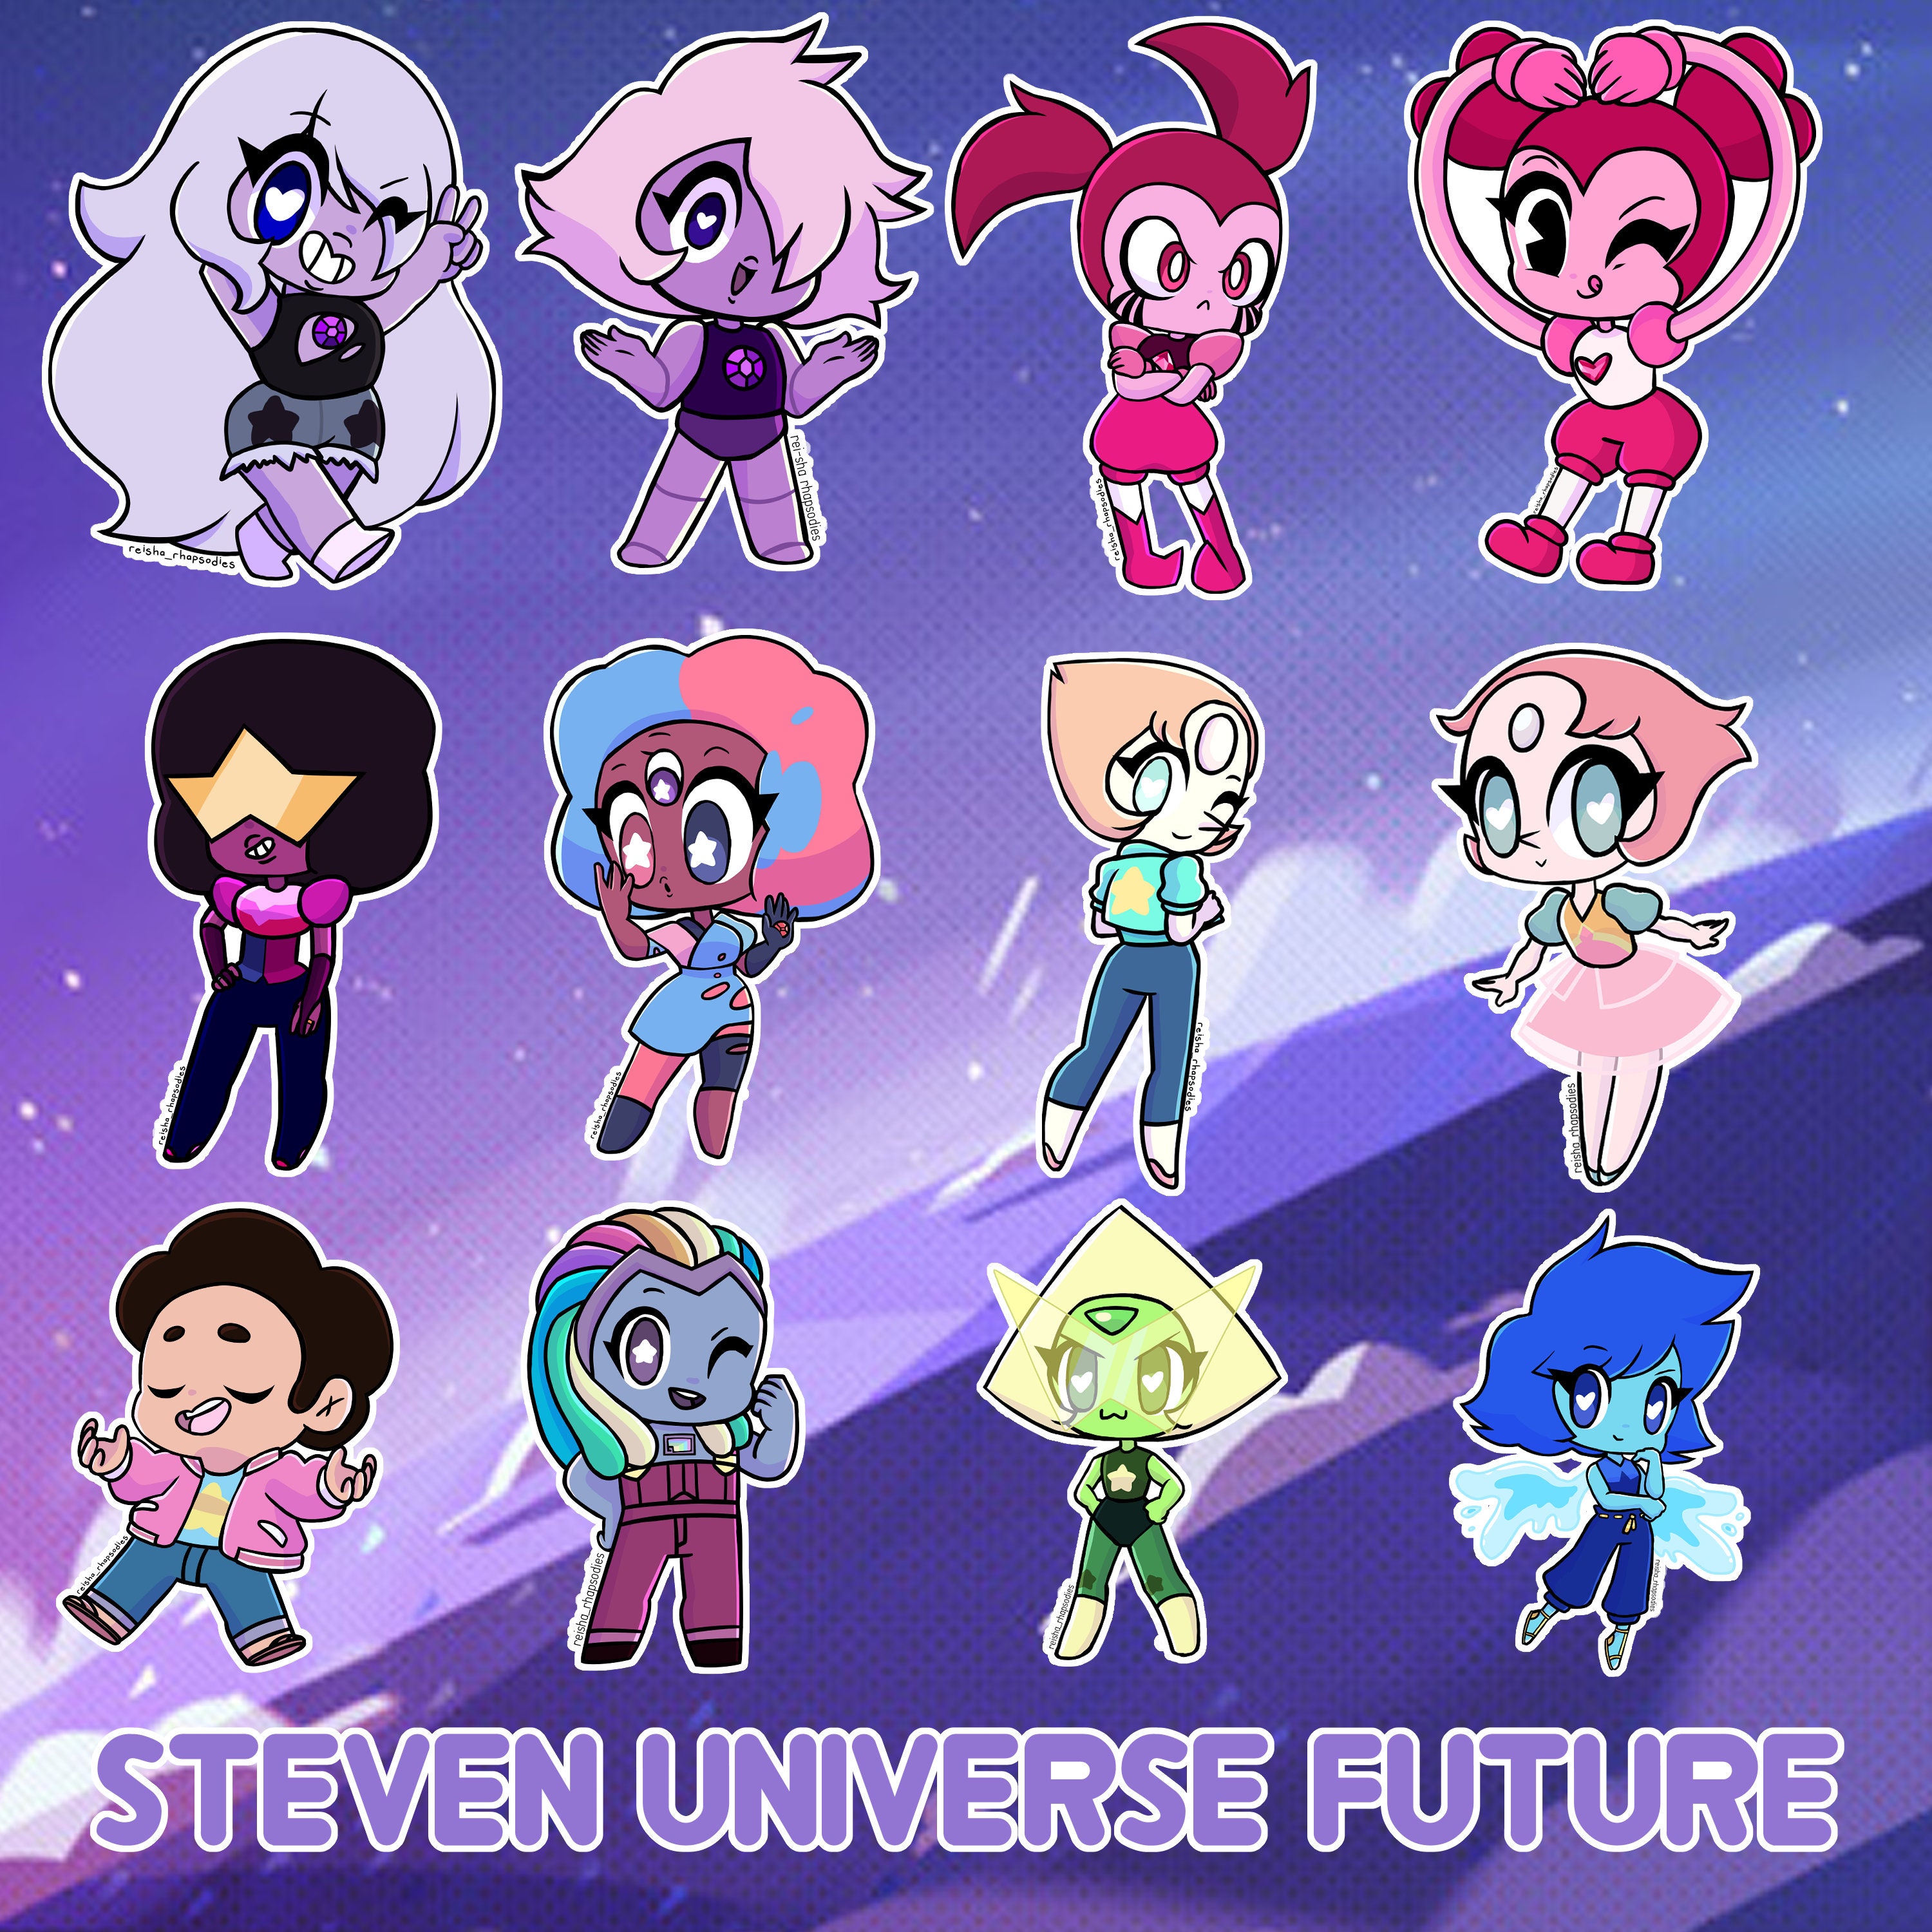 Steven Universe Future  Steven universe, Steven, Universe